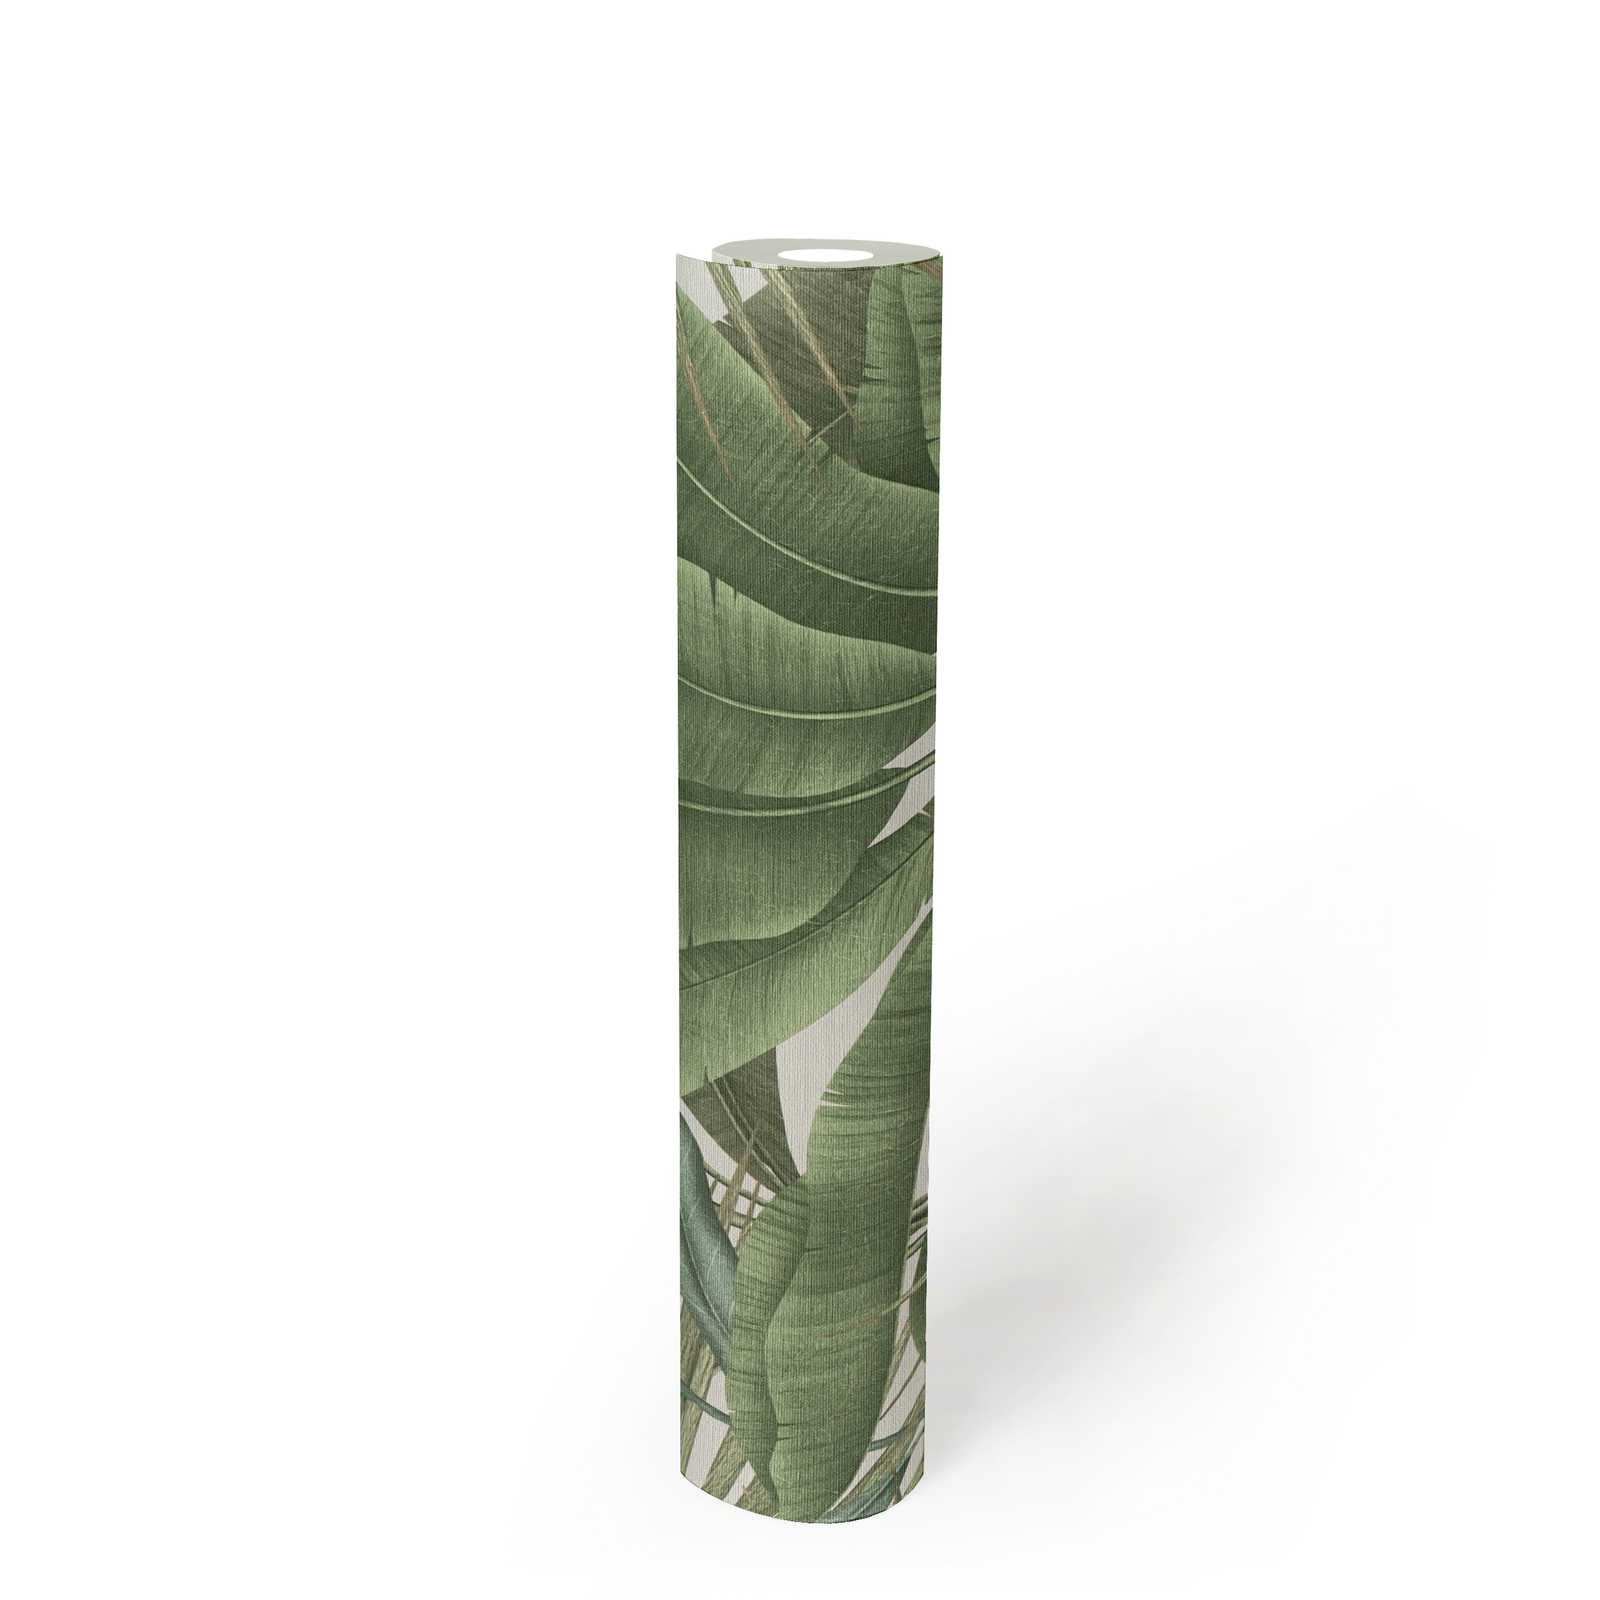             Papel pintado selva floral con textura ligera y hojas grandes - verde, blanco, beige
        